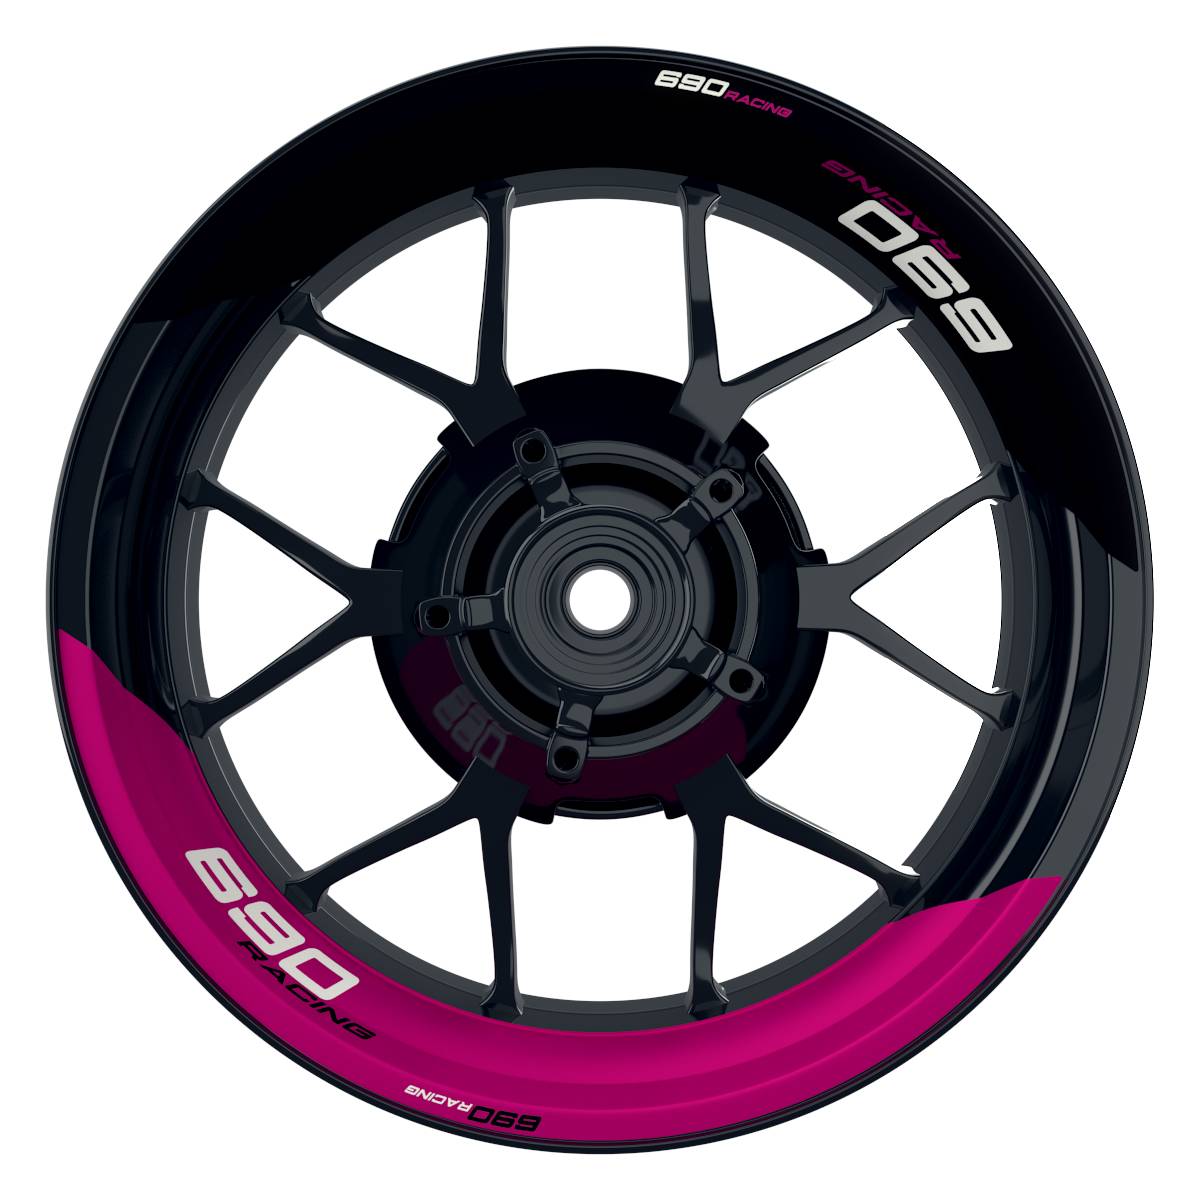 KTM Racing 690 halb halb schwarz pink Frontansicht